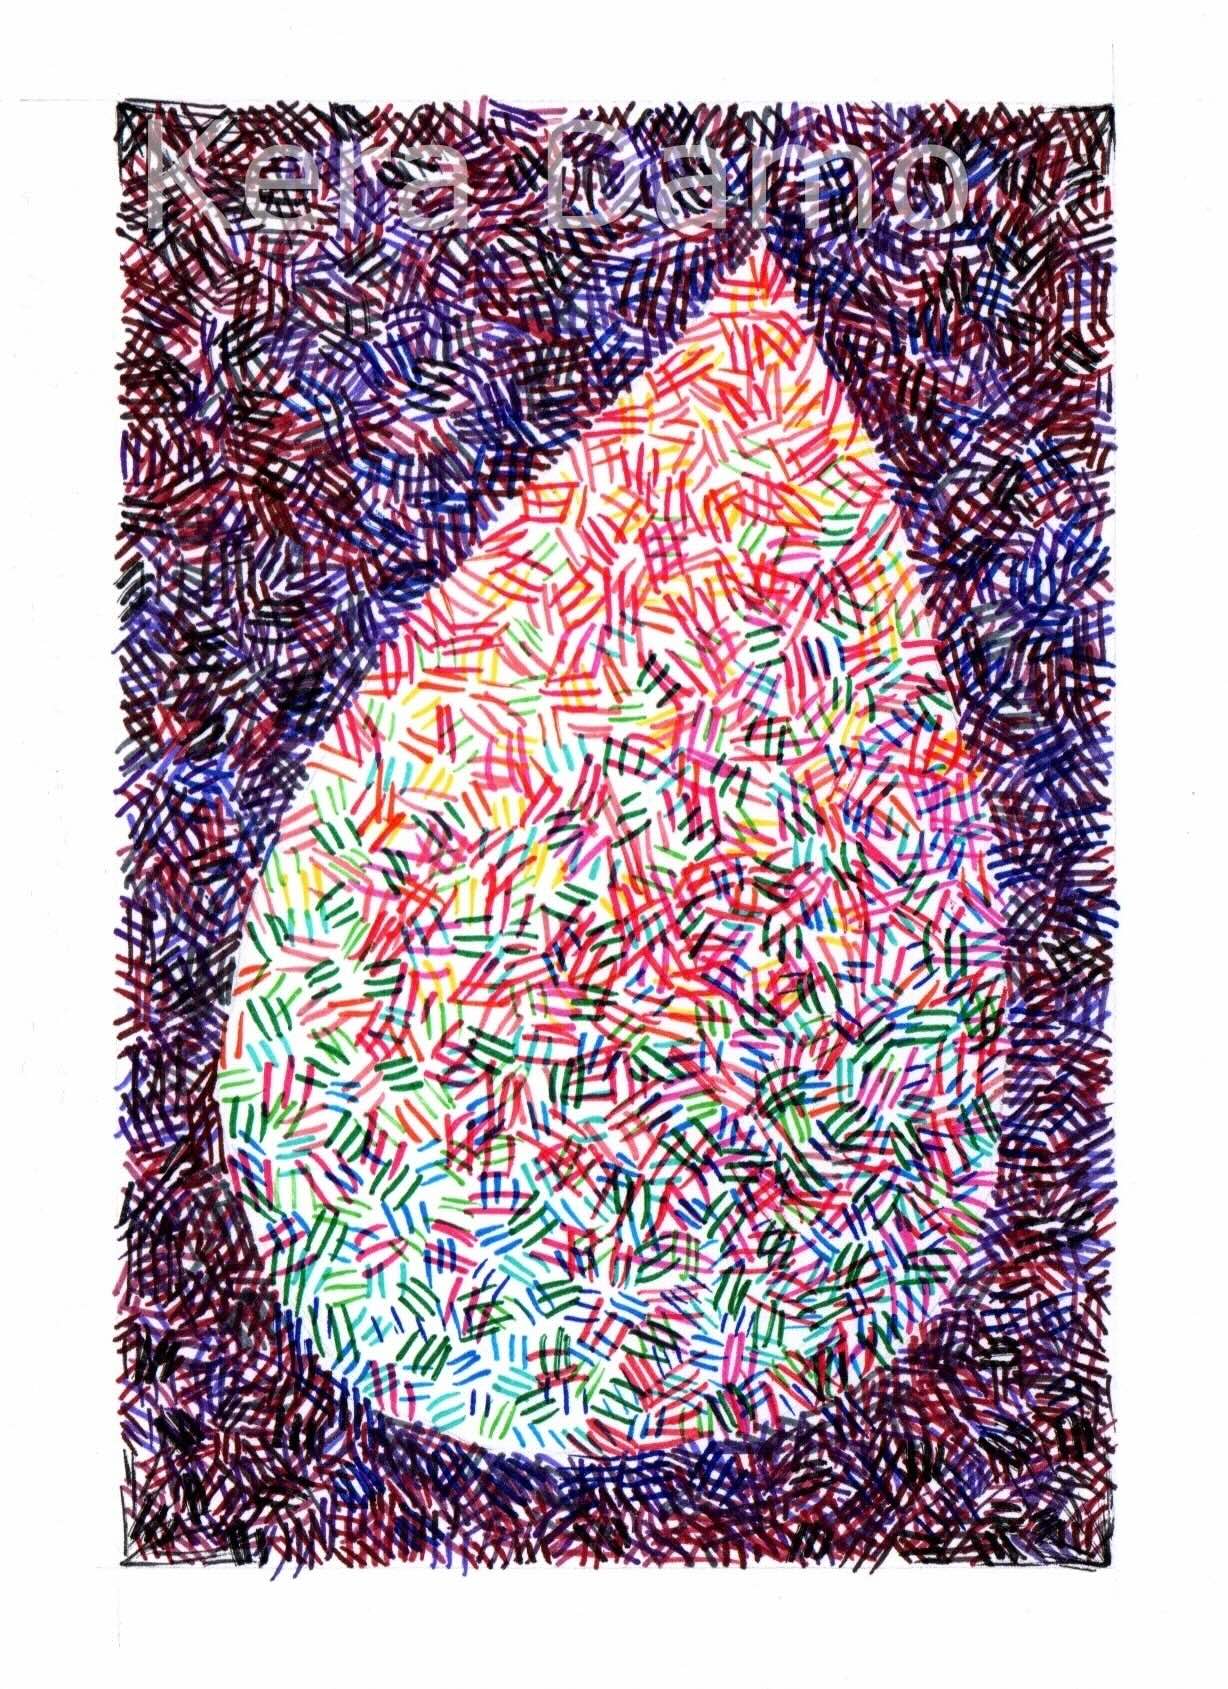 Multicoloured pen drawing of half a heart, made by visual artist Kera Damo from the Hague / Een meerkleurige pentekening van een half hart, gemaakt door beeldend kunstenaar Kera Damo uit Den Haag